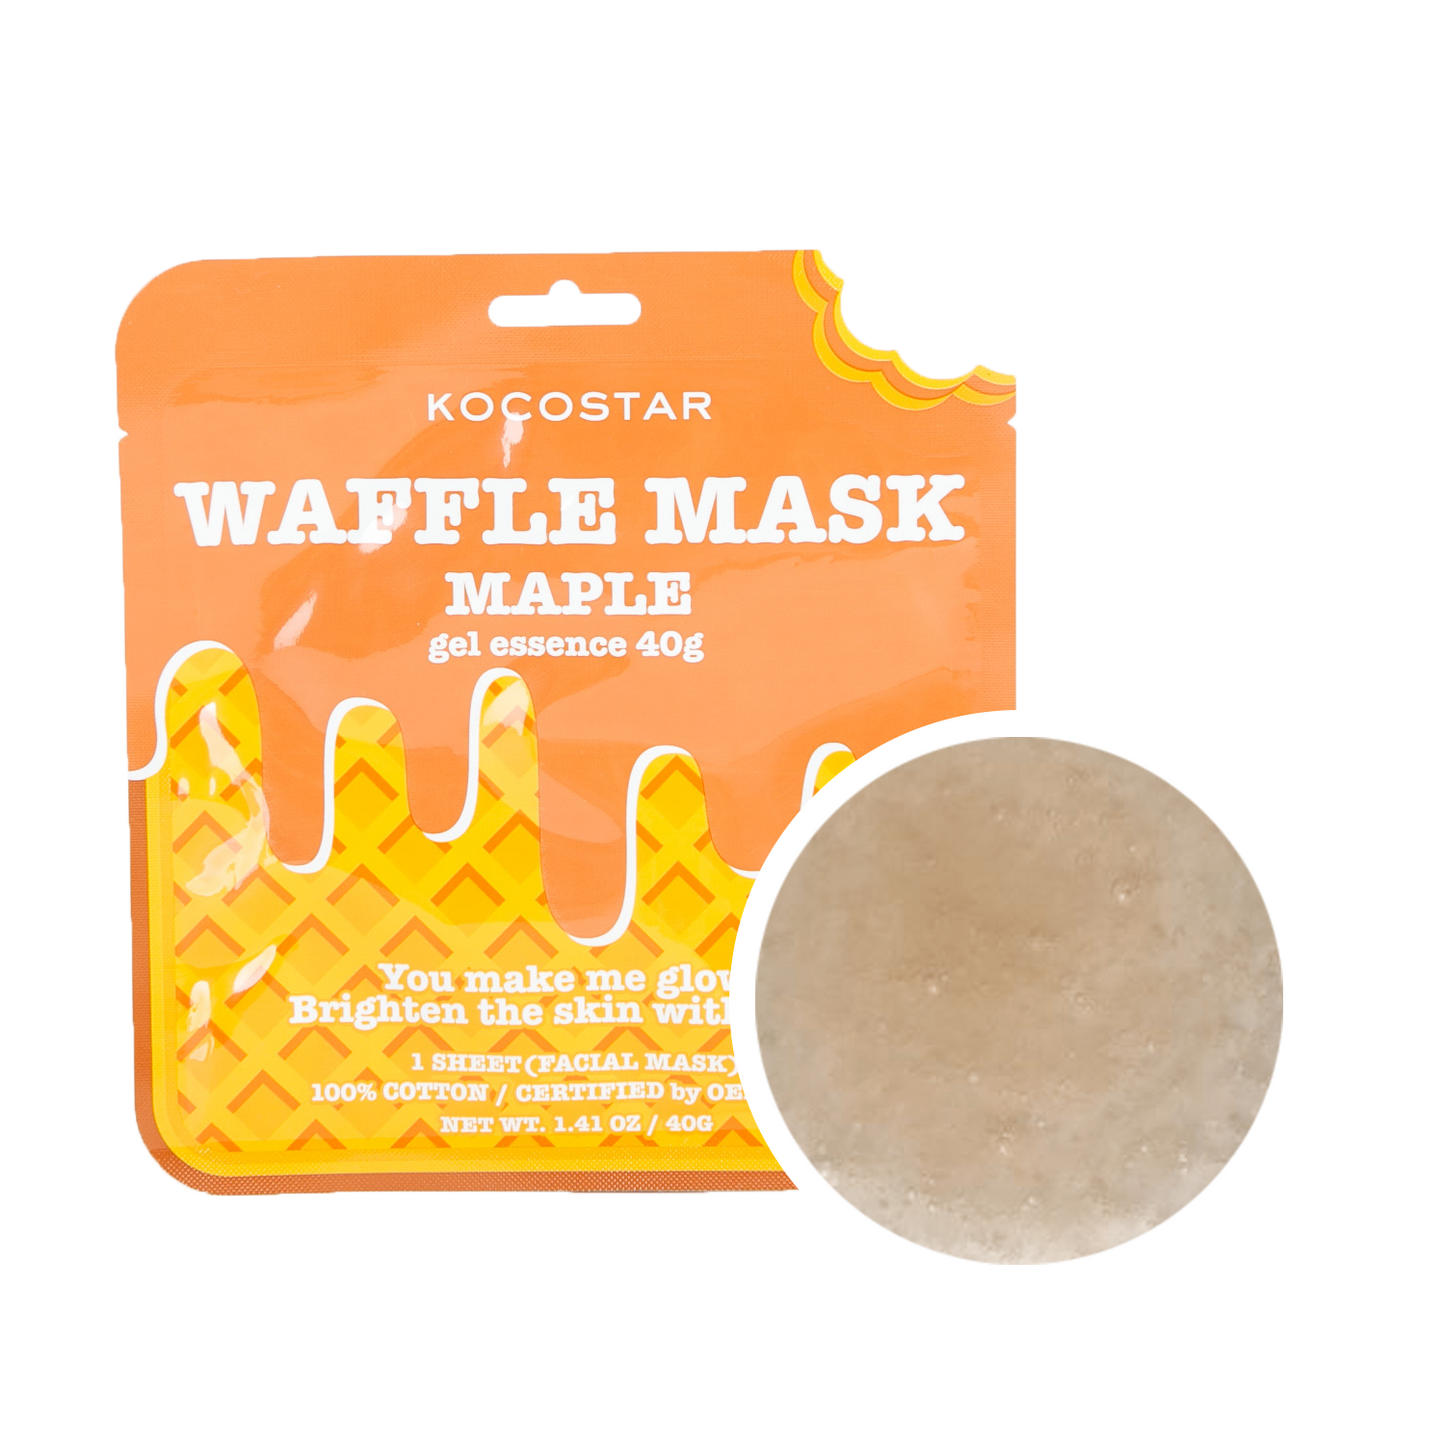 Waffle Mask Maple